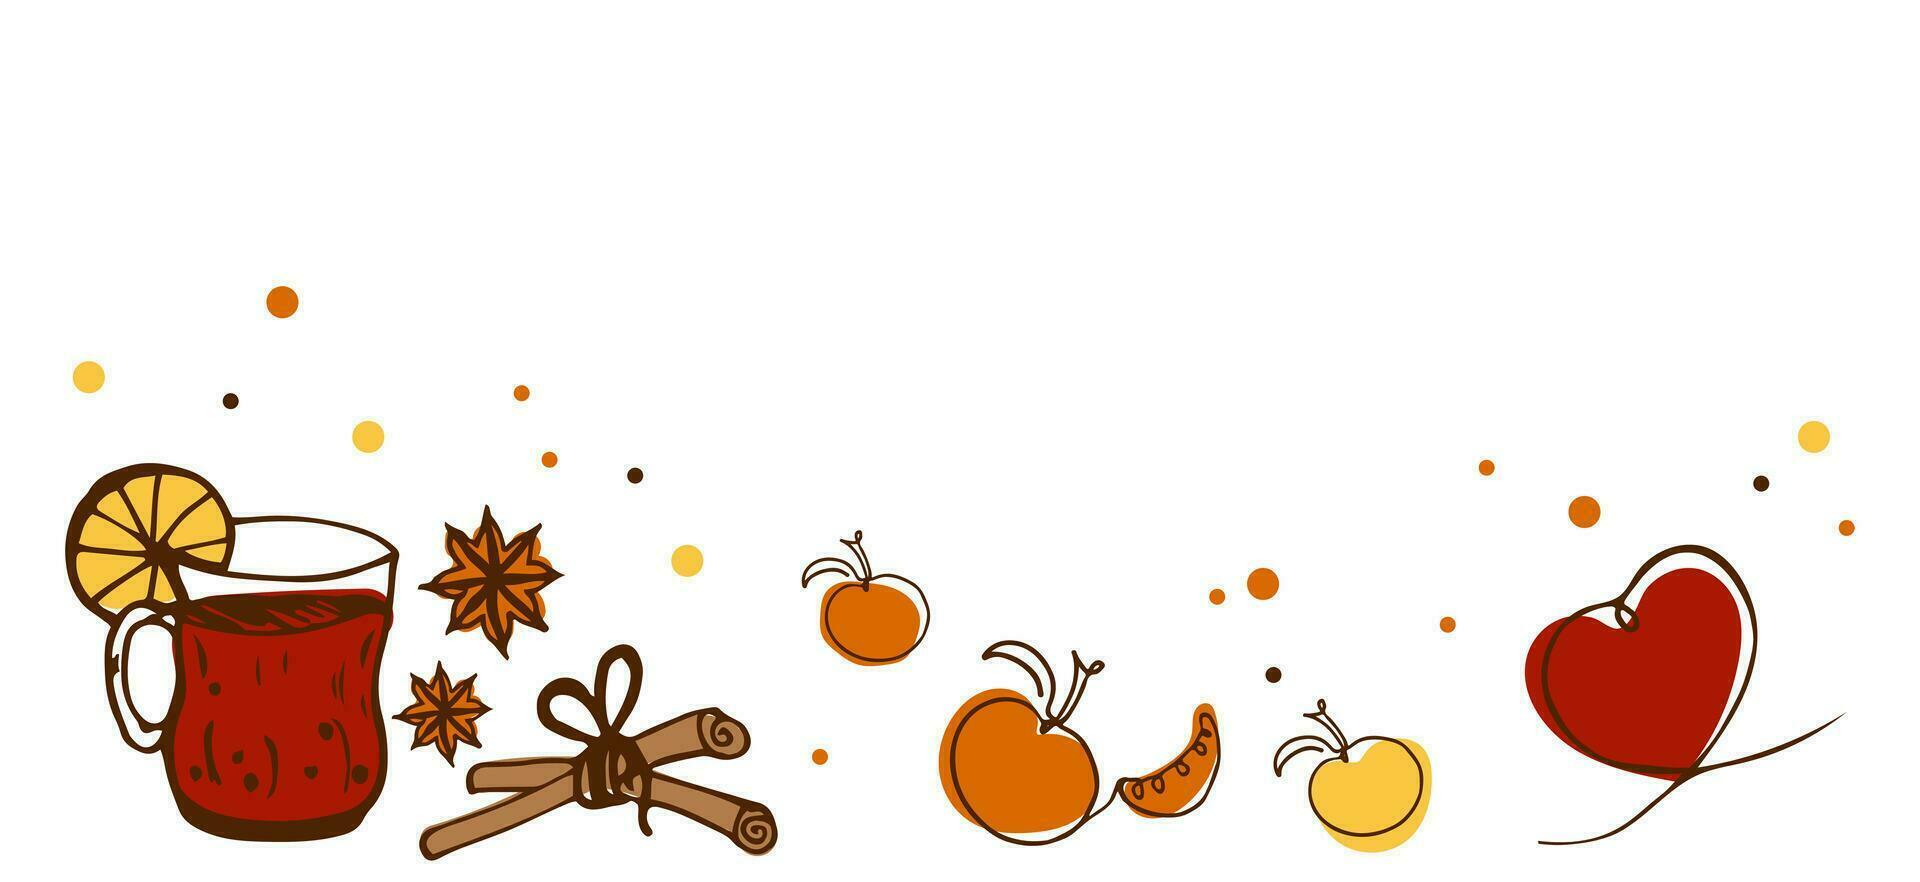 vector wit spandoek. kop met heet drankje, kaneel, mandarijn, oranje, hart, vanille in tekening stijl